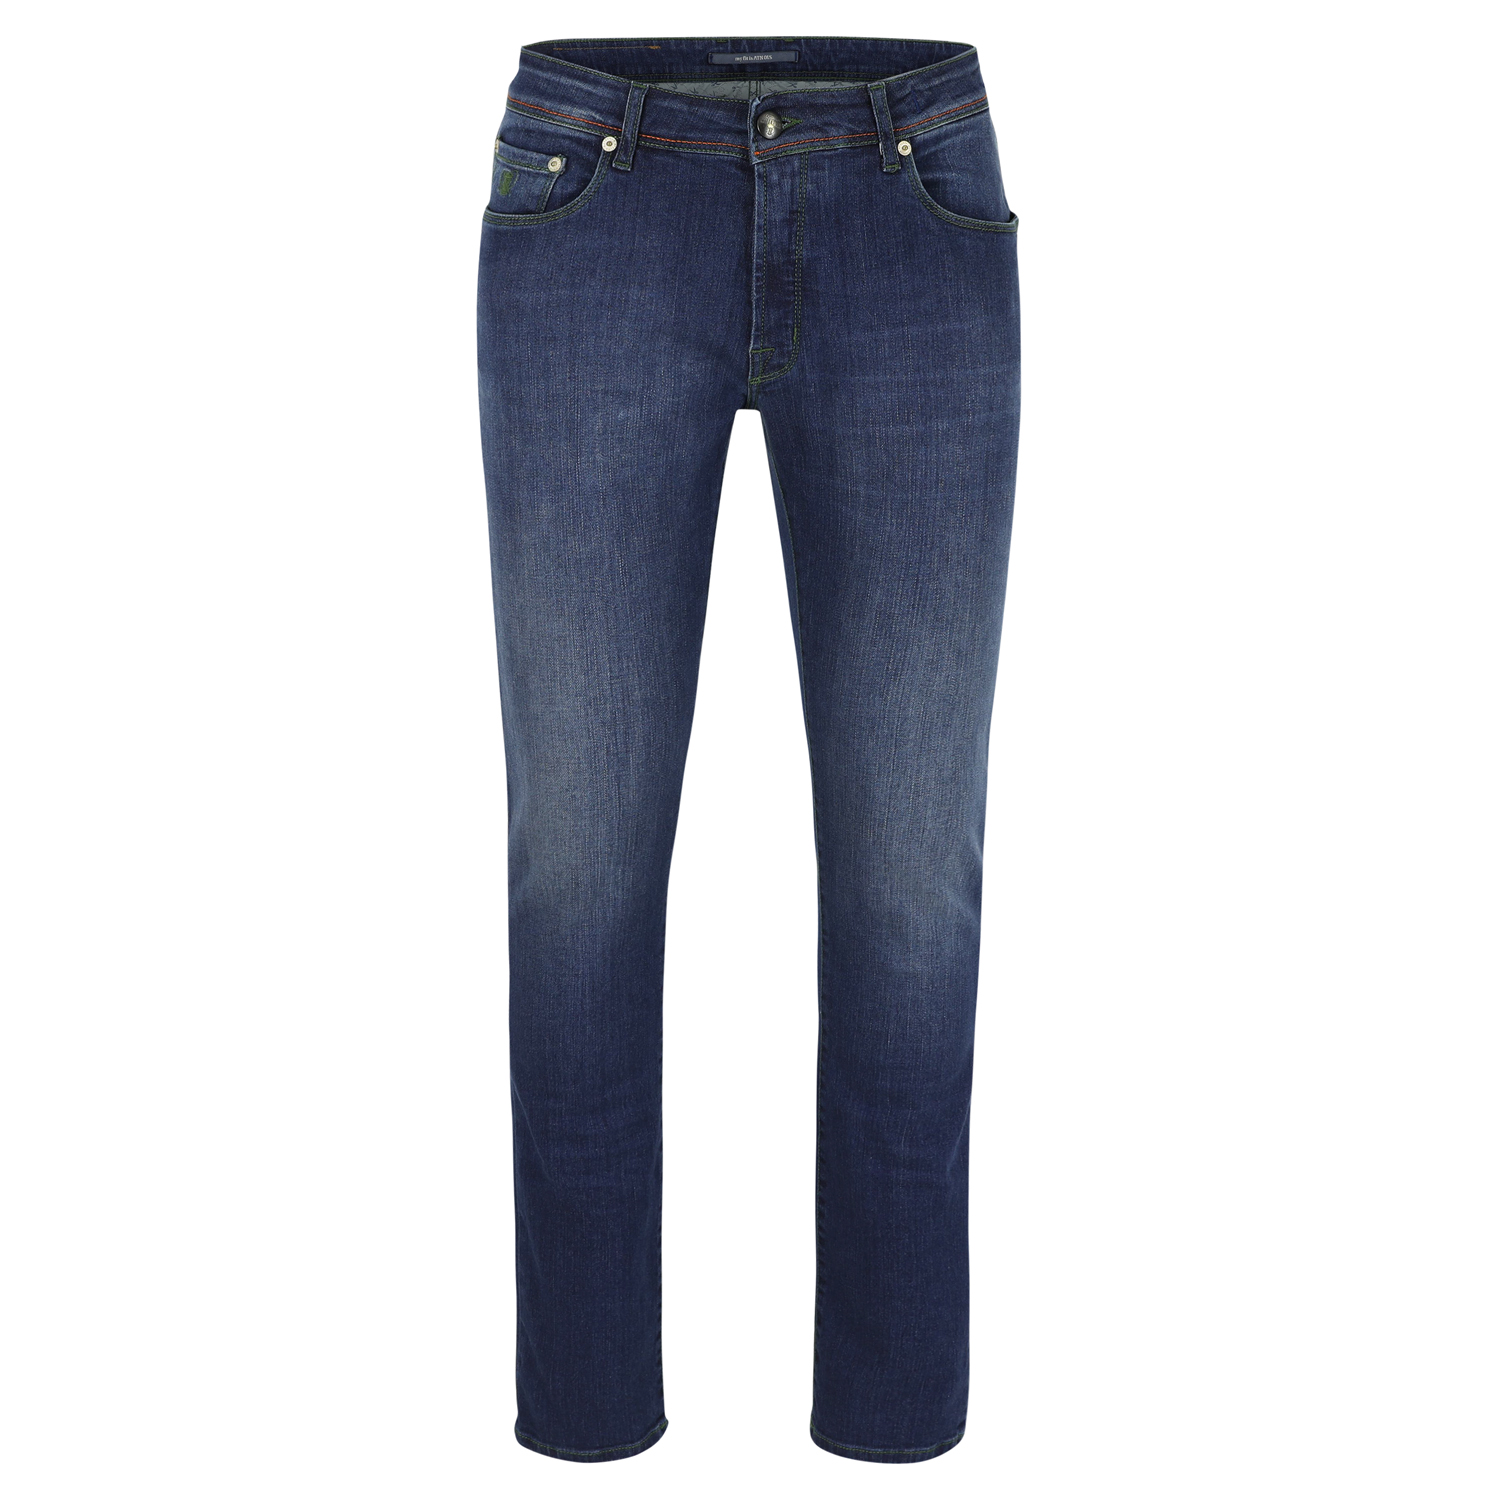 Atelier Noterman - jeans in blauwe denim in rustige wassing - 38/34 - Heren